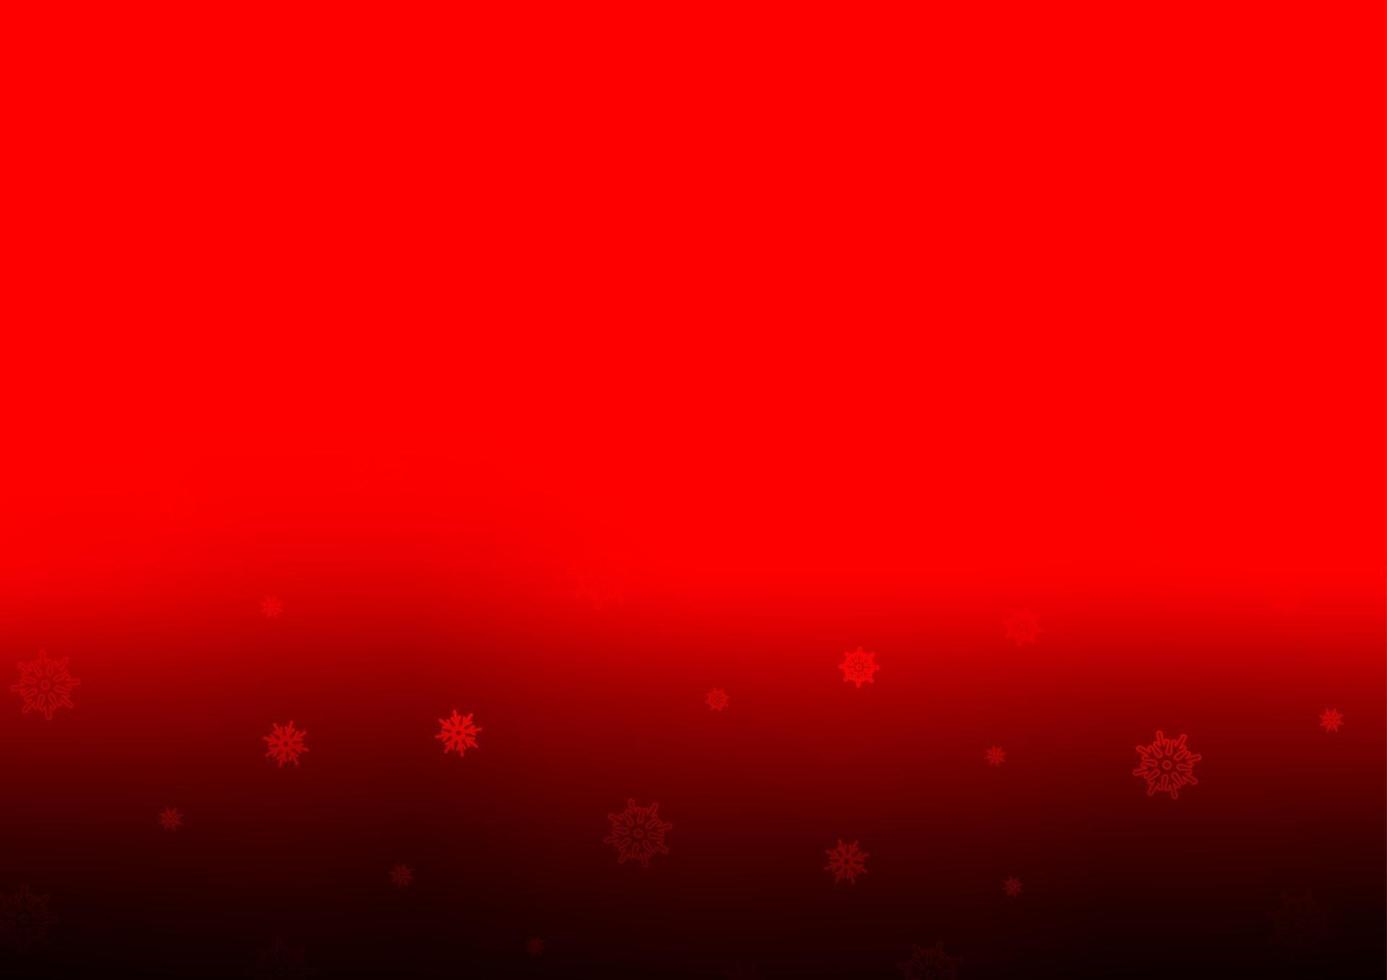 diseño de vector rojo claro con copos de nieve brillantes.